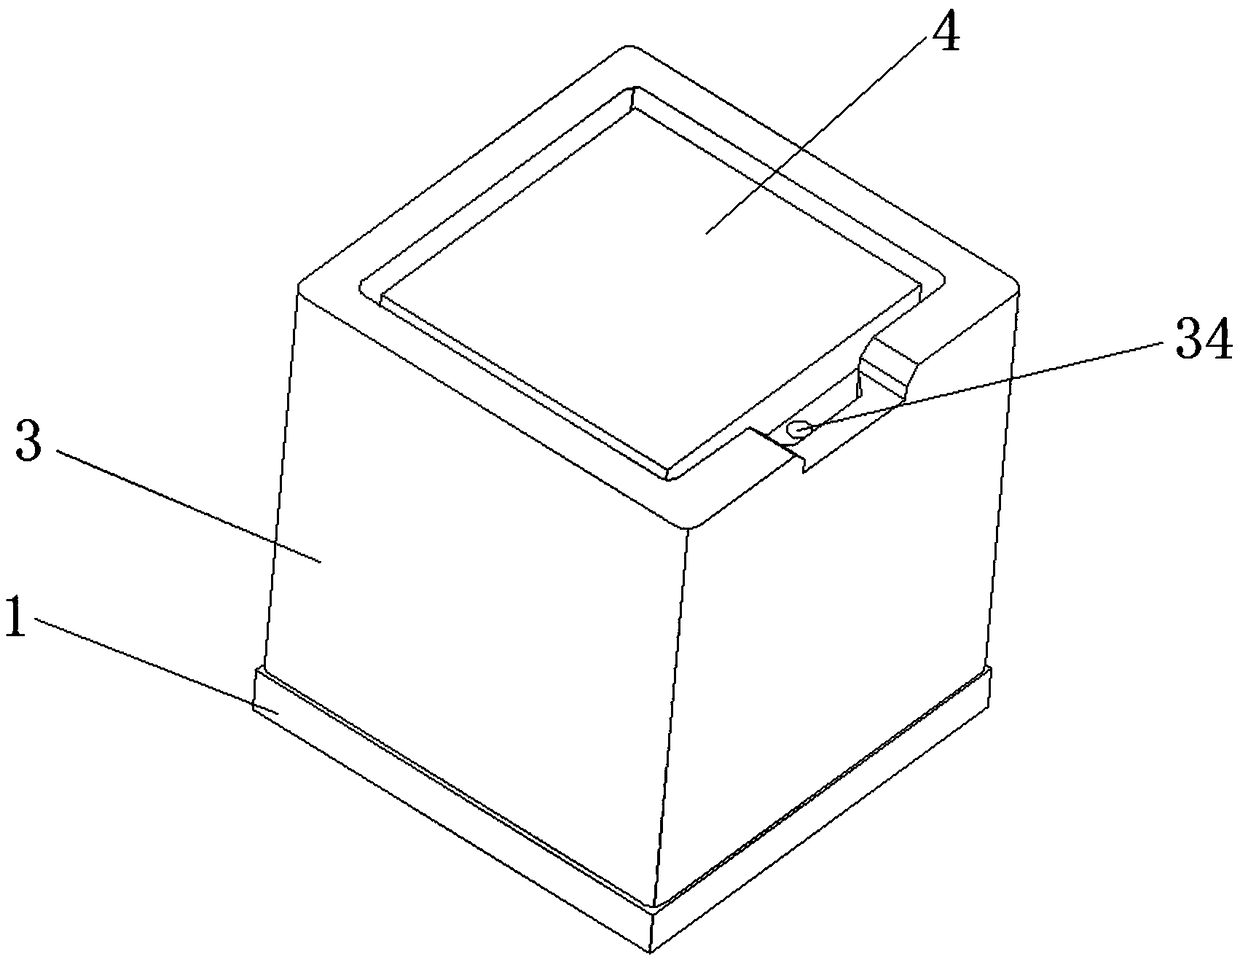 Novel laser sensor package structure